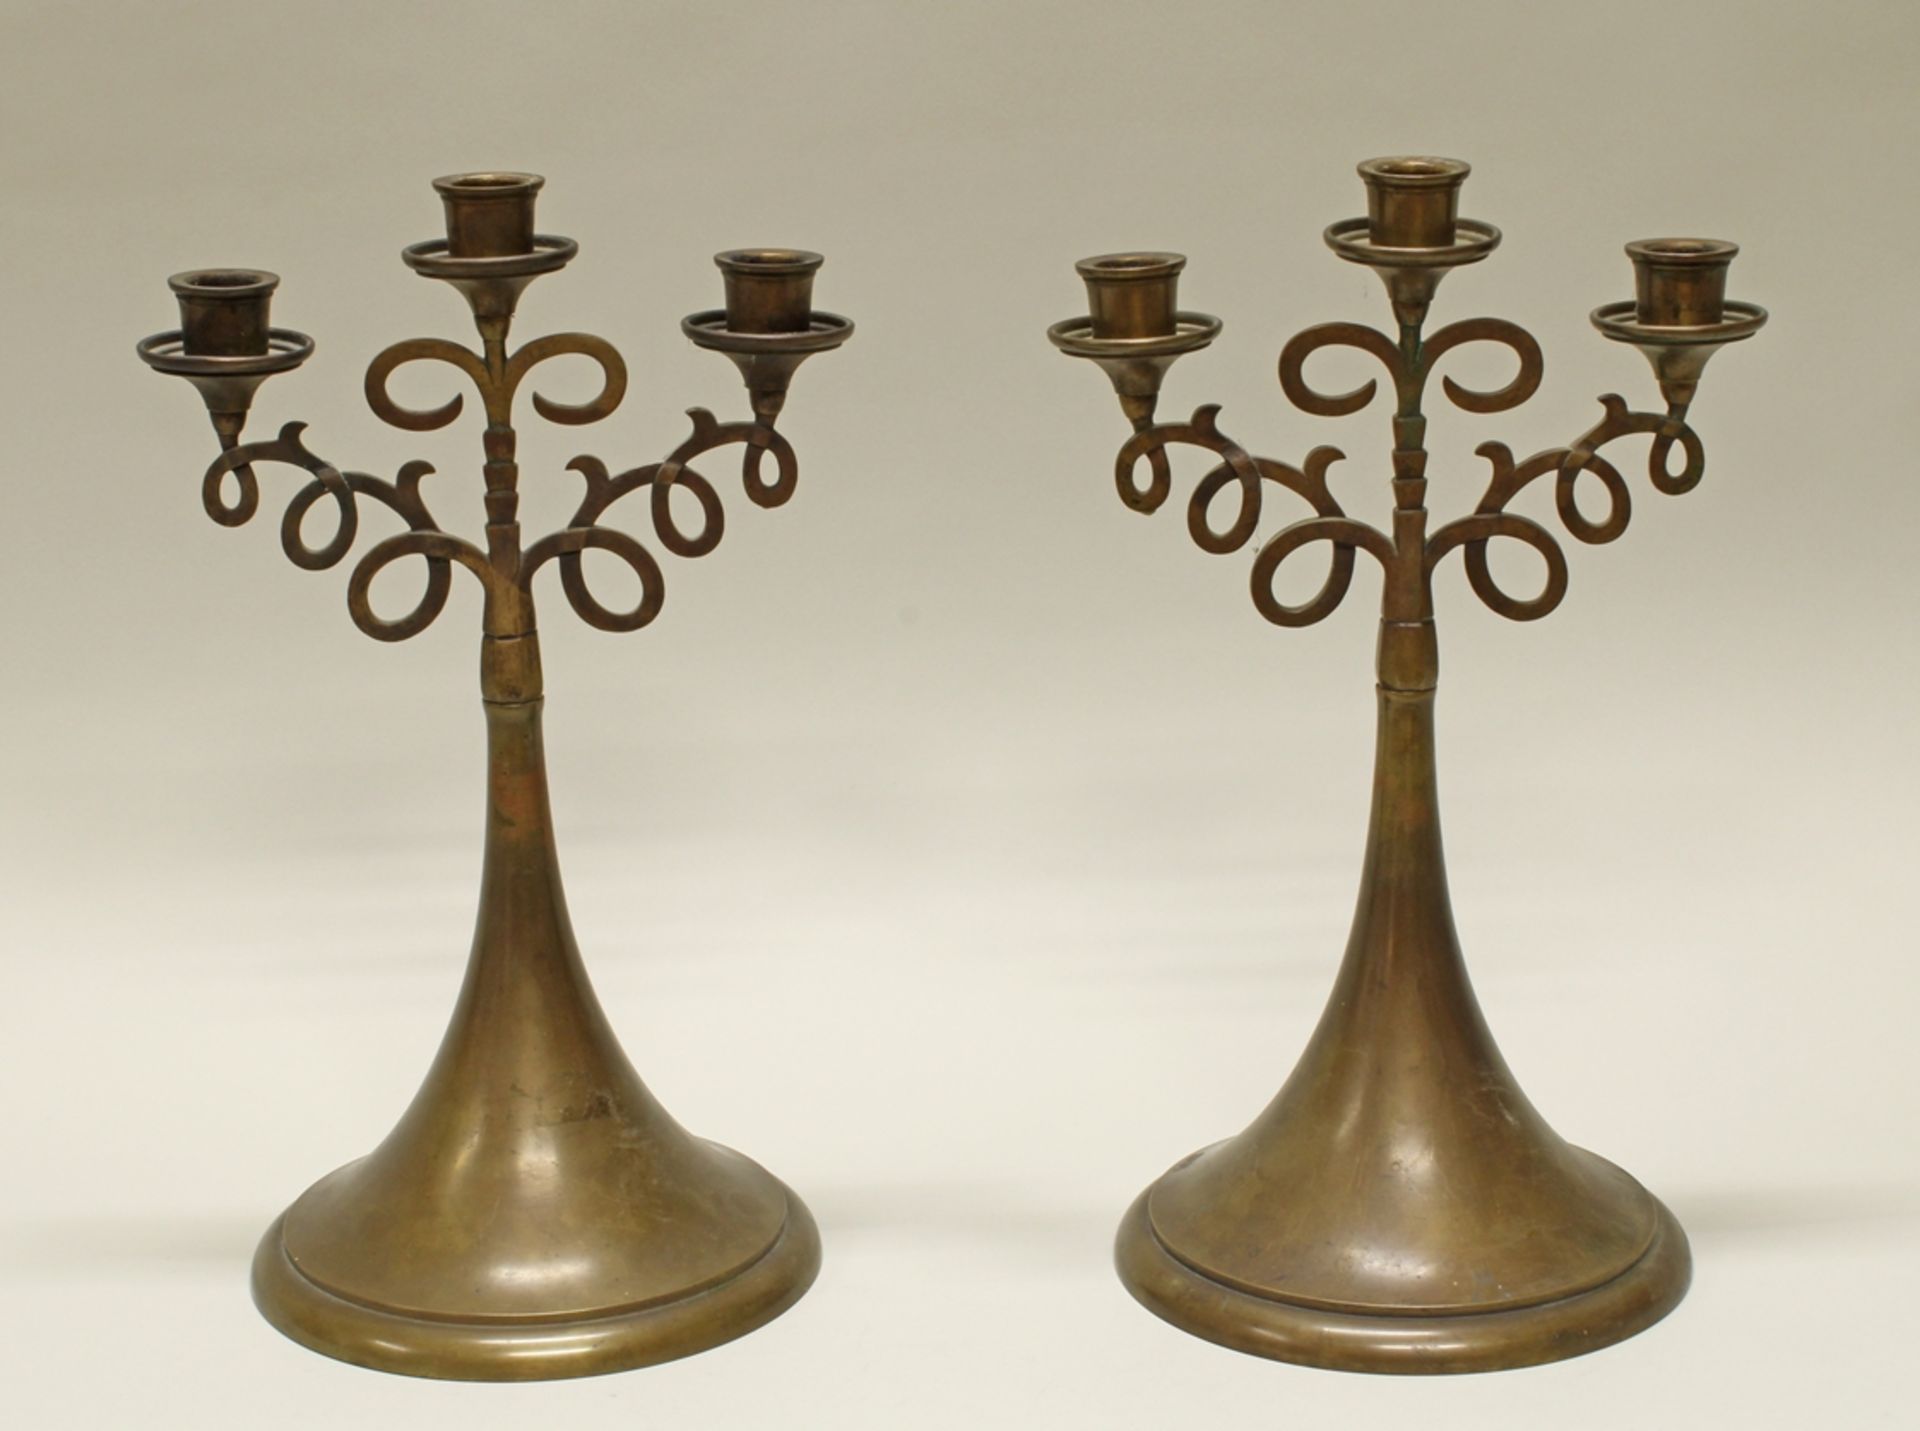 Paar Kerzenleuchter, 20. Jh., Metall, patiniert, je dreiflammig, trompetenförmiger Schaft, 43 cm ho